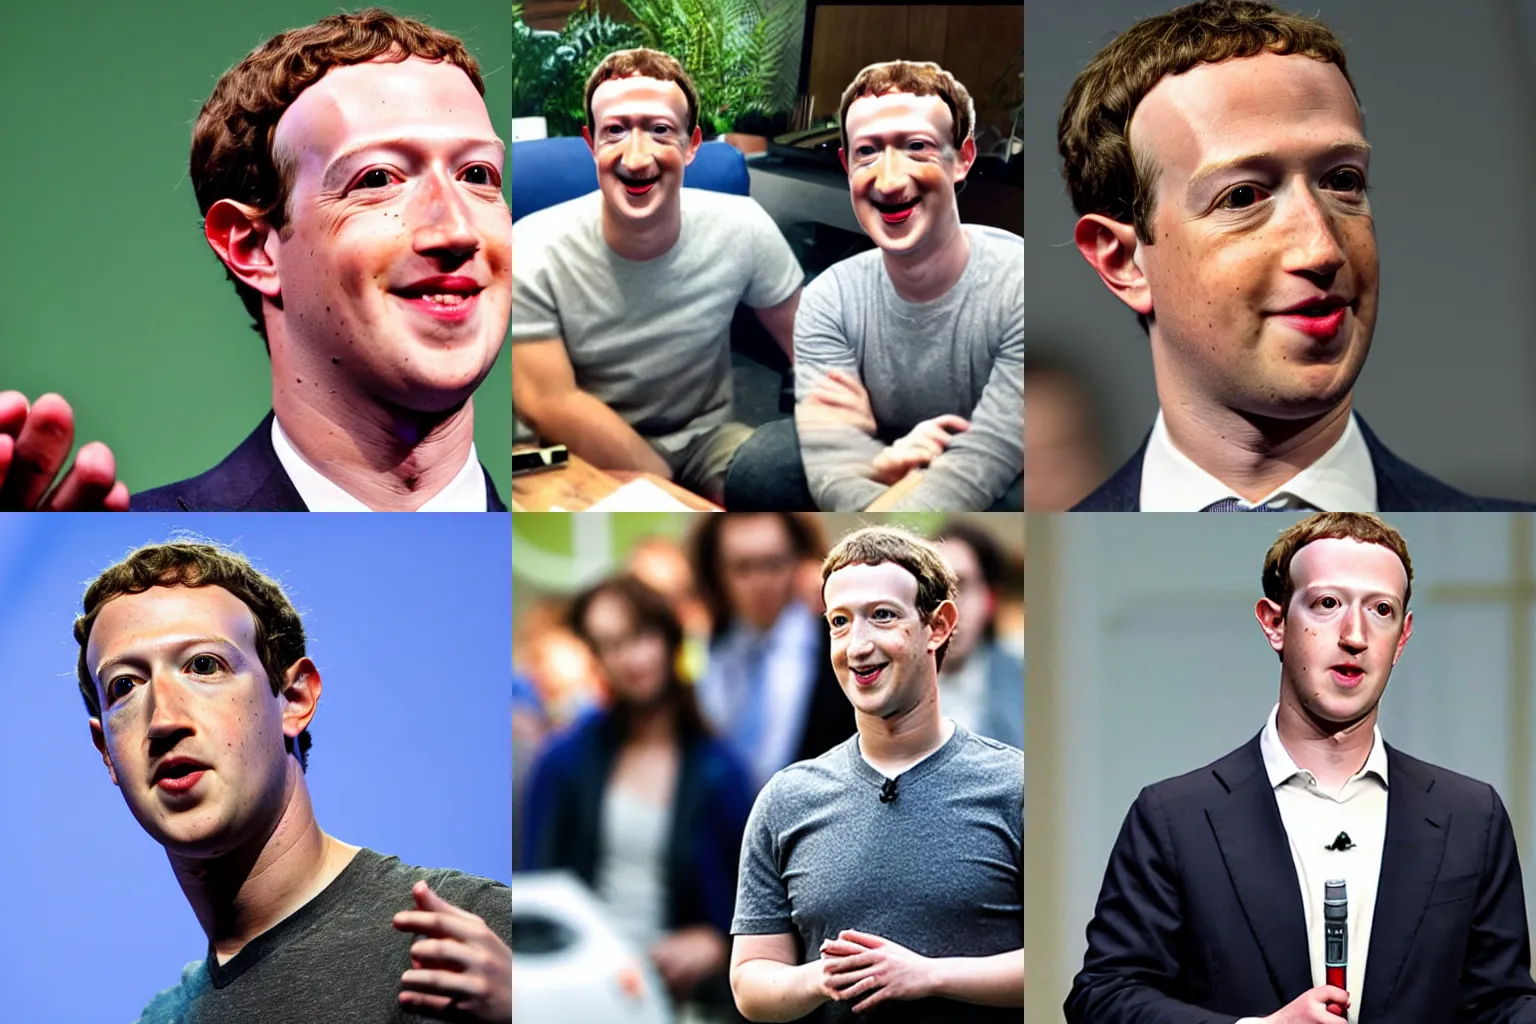 Image similar to Mark Zuckerberg as a lizard person